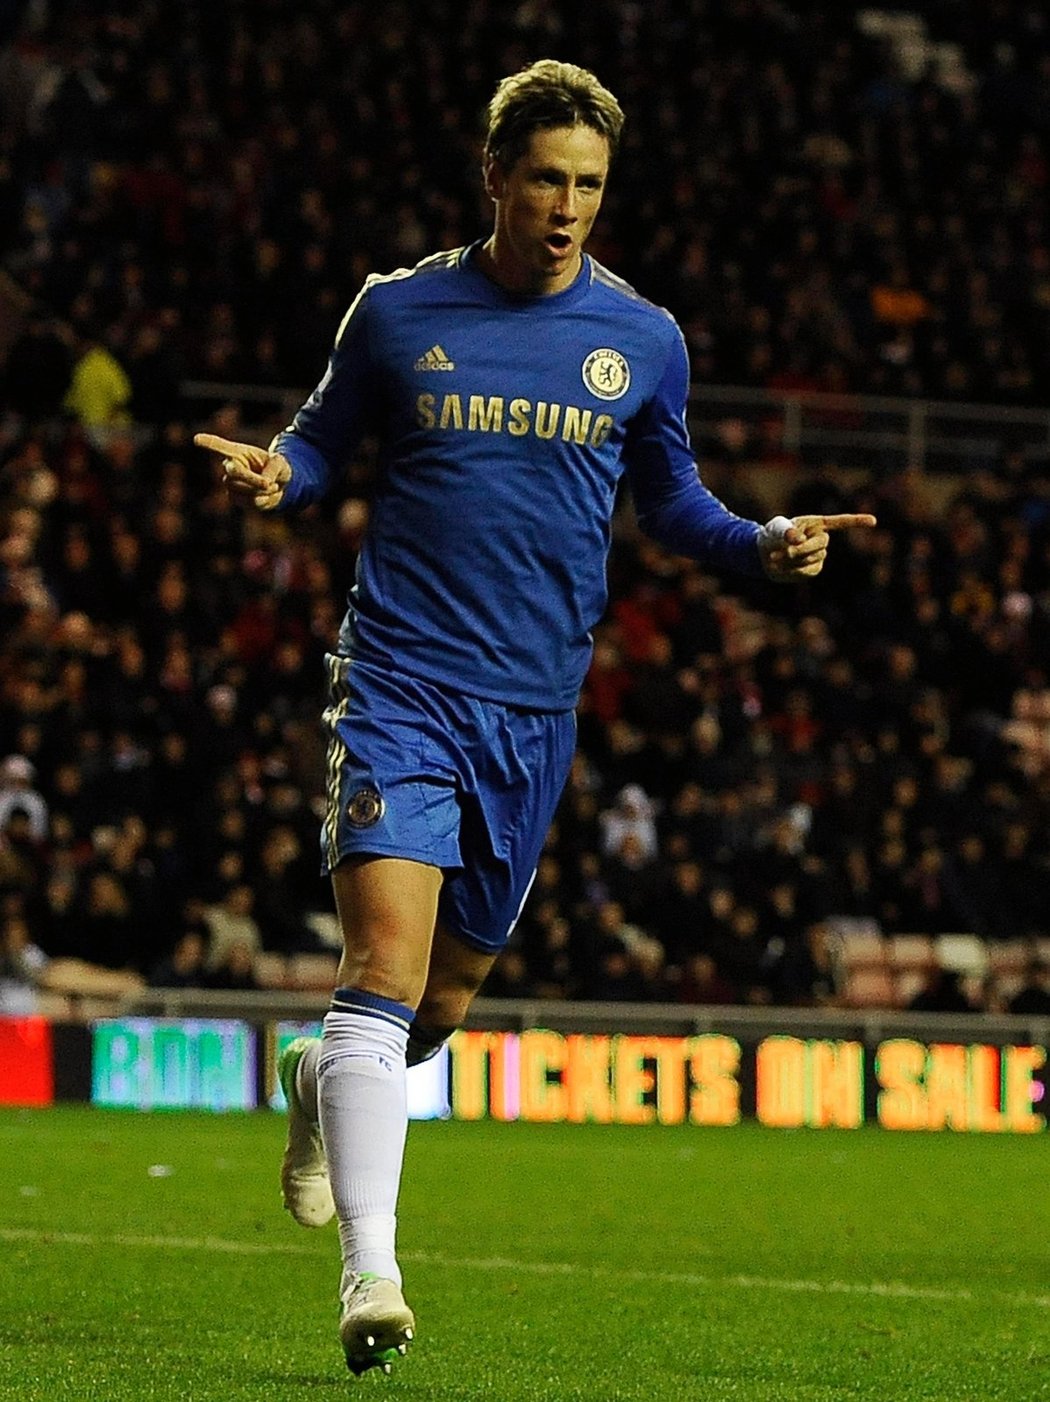 Fotbalisté Chelsea ve čtvrtém utkání anglické ligy pod vedením trenéra Rafaela Beníteze poprvé zvítězili. Sunderland porazili na jeho hřišti 3:1 i díky dvěma brankám Fernanda Torrese